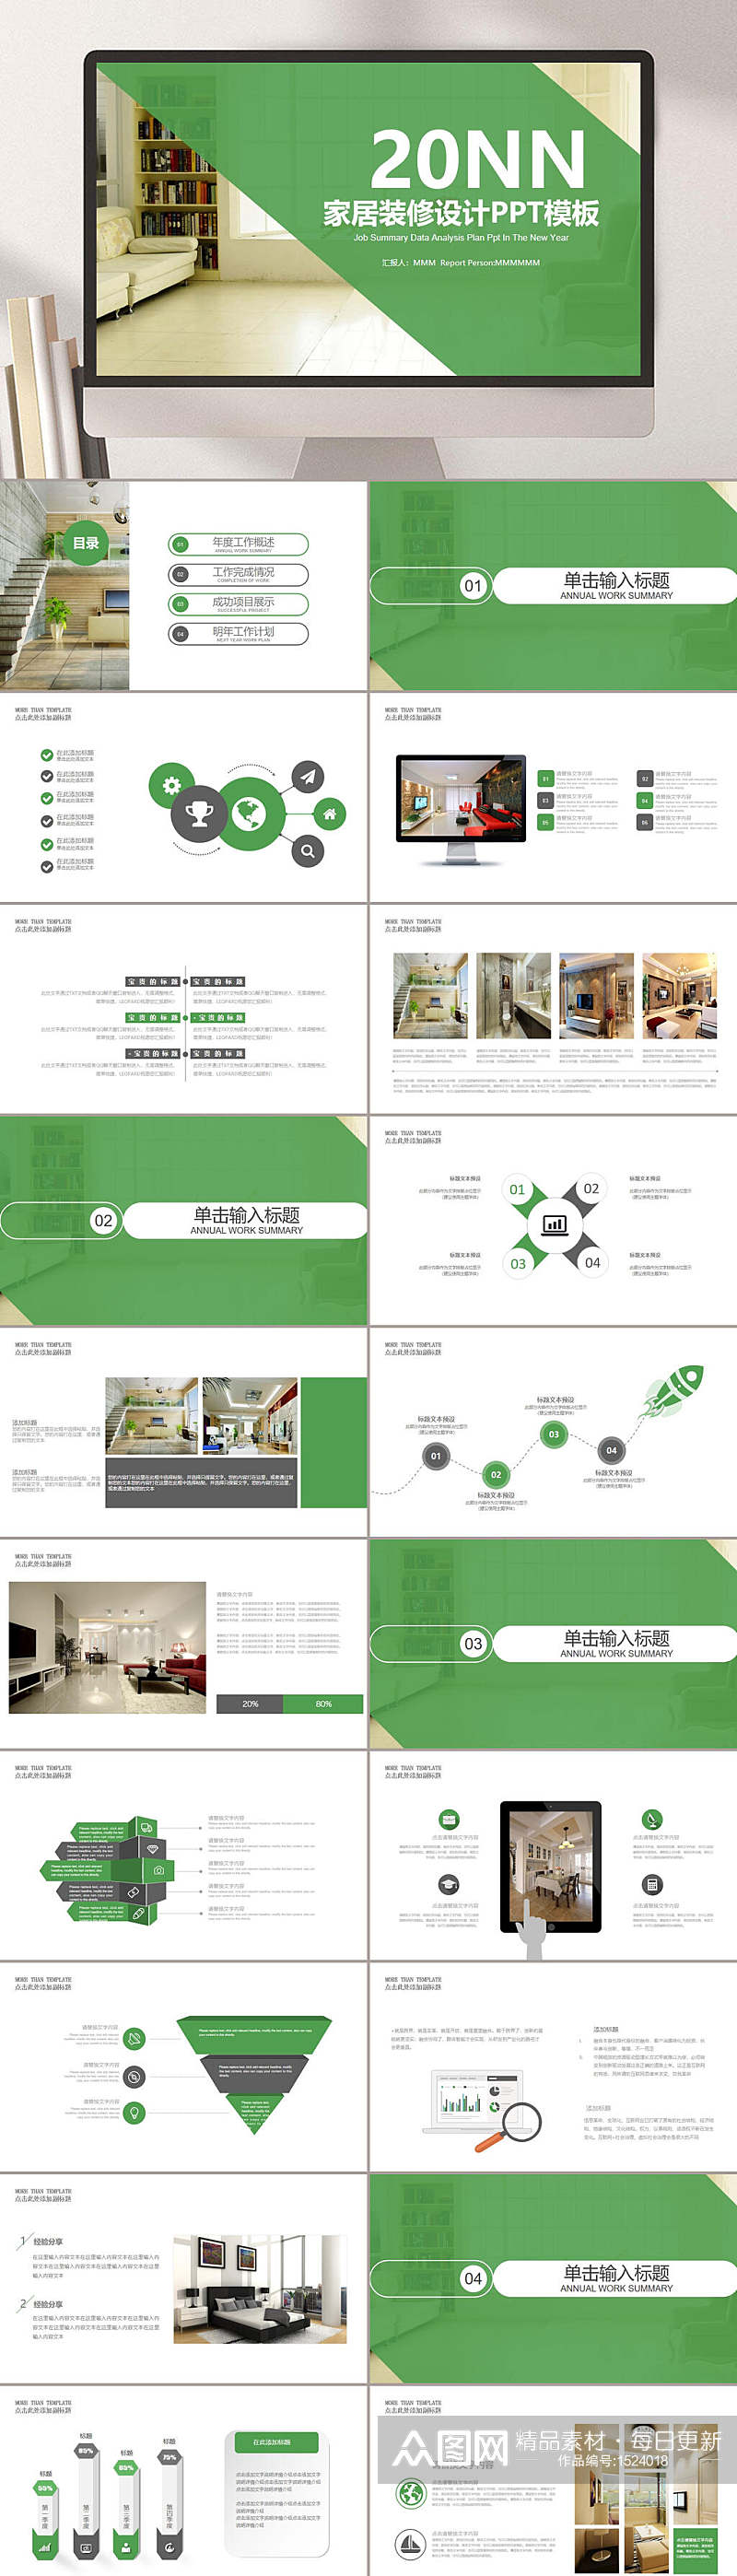 简约家居室内设计绿色主题通用PPT模板素材